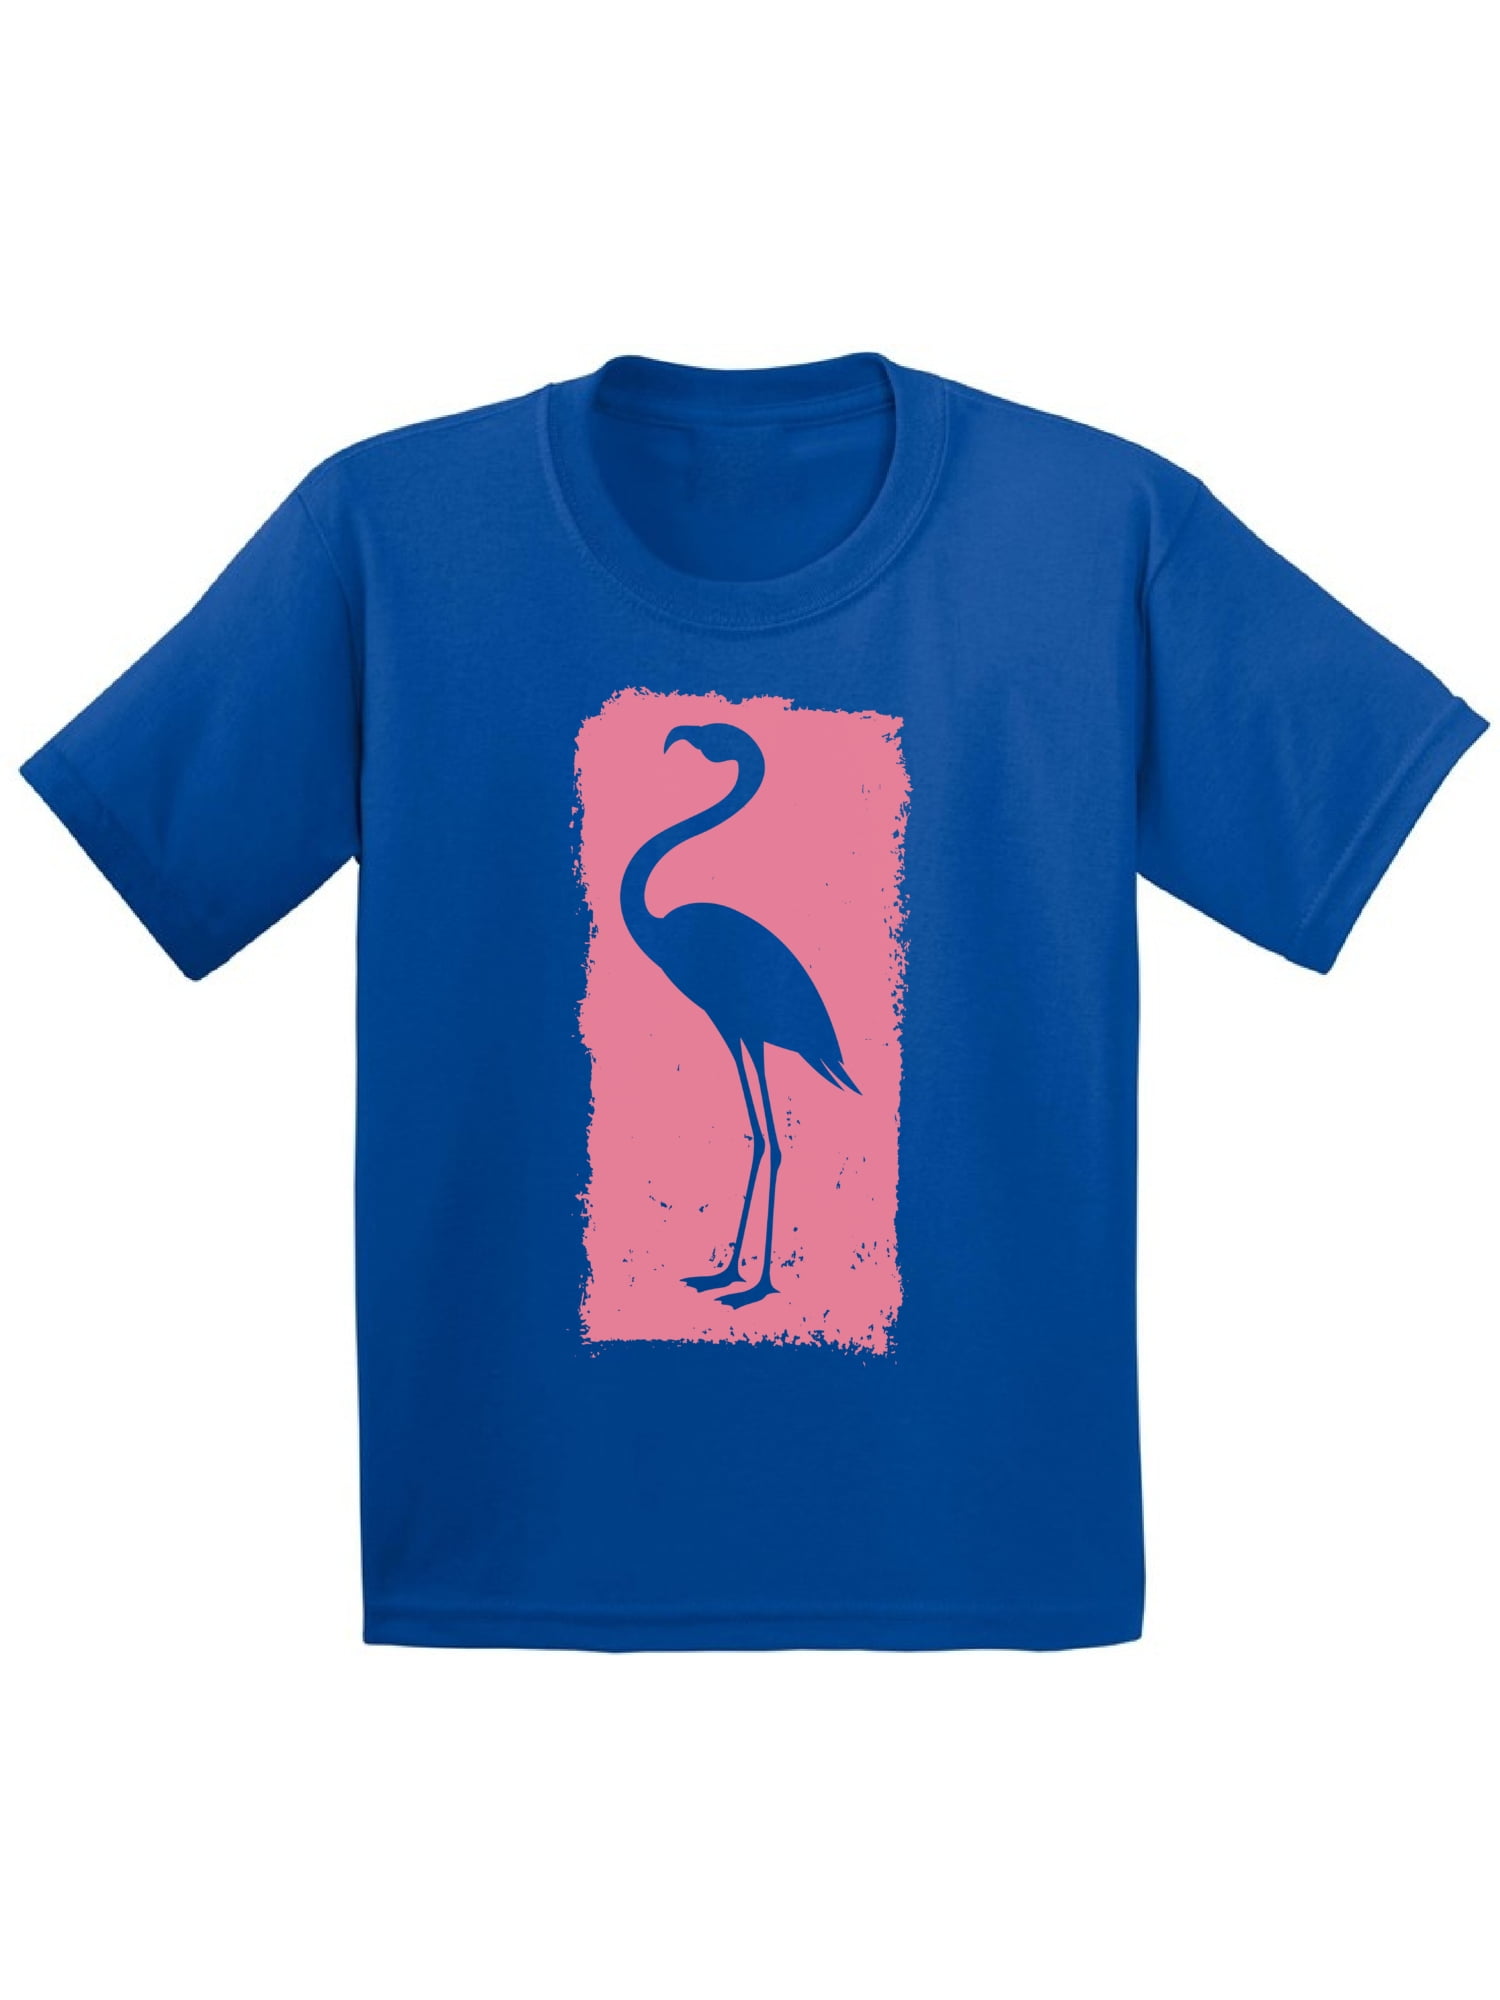 boys flamingo tshirt kids flamingo tshirt Stand tall flamingo boys tshirt summer tshirt for boys